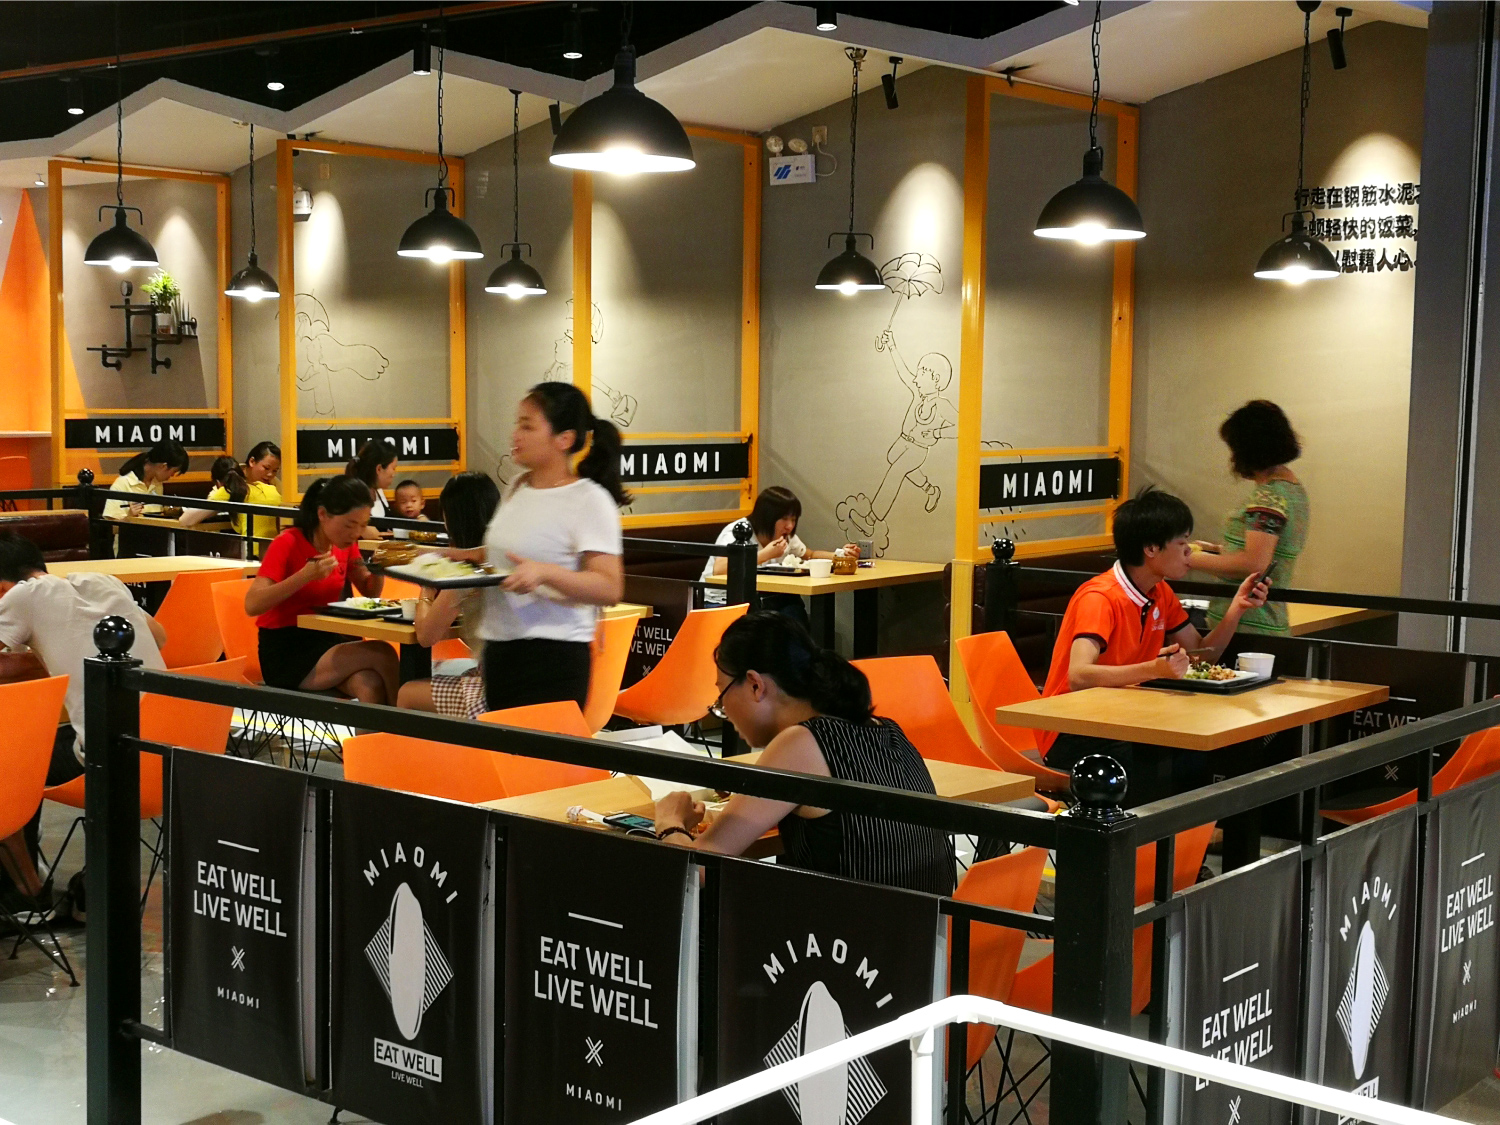 东莞快餐连锁餐饮品牌妙米餐厅内部装修设计